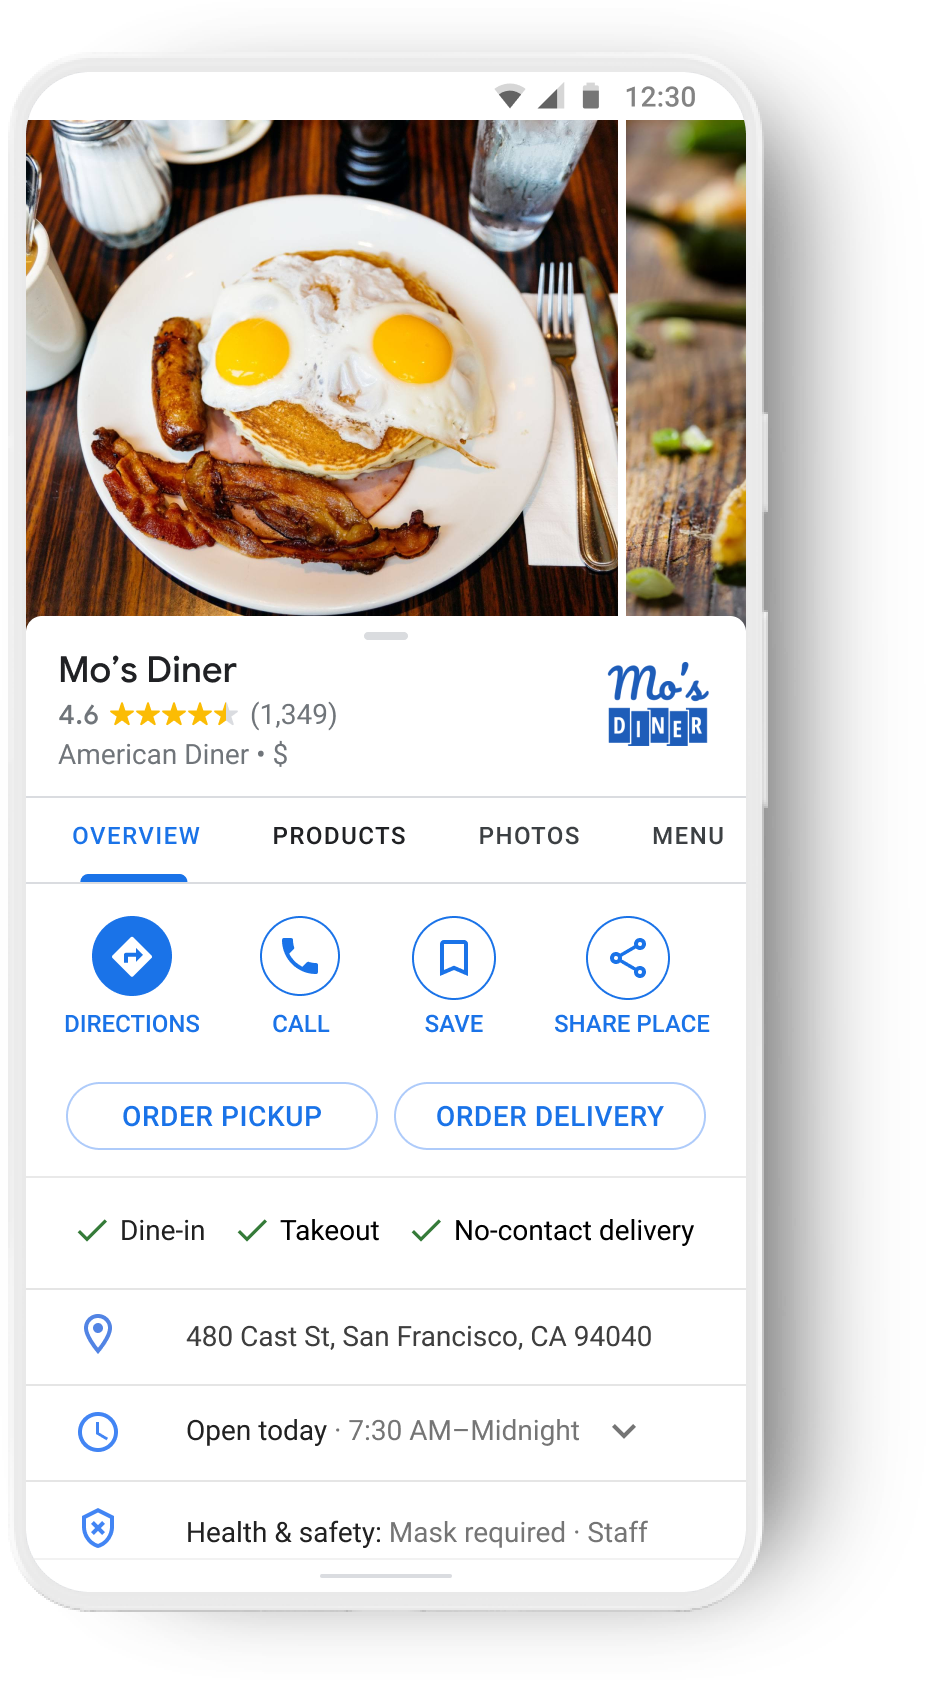 在 Google 地图上端到端地订购一家餐厅。